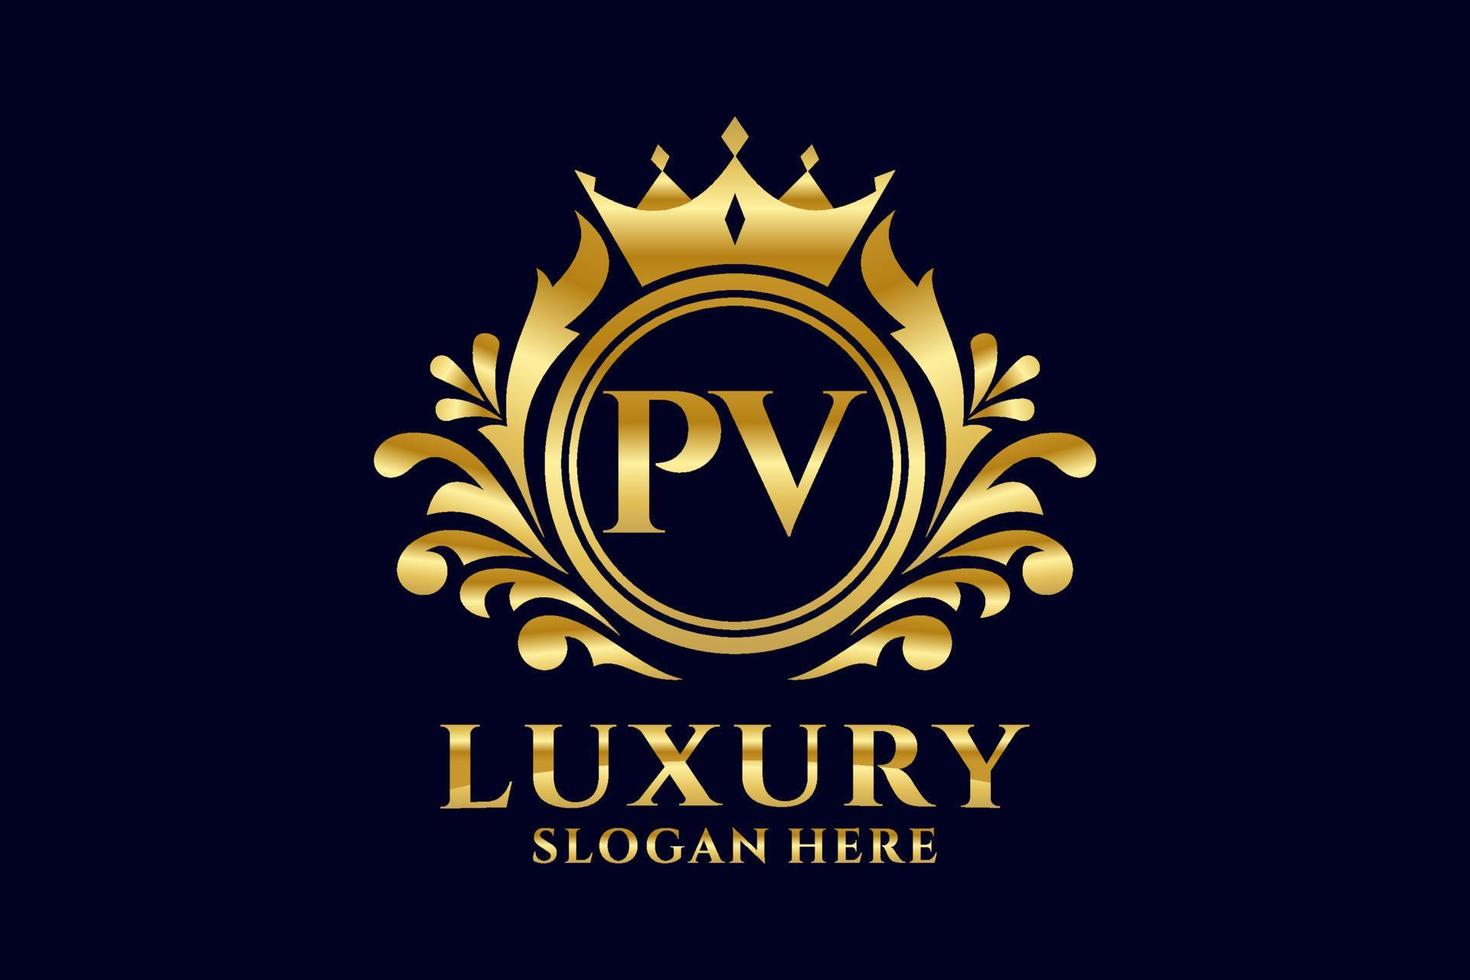 Anfangs-PV-Brief königliche Luxus-Logo-Vorlage in Vektorgrafiken für luxuriöse Branding-Projekte und andere Vektorillustrationen. vektor